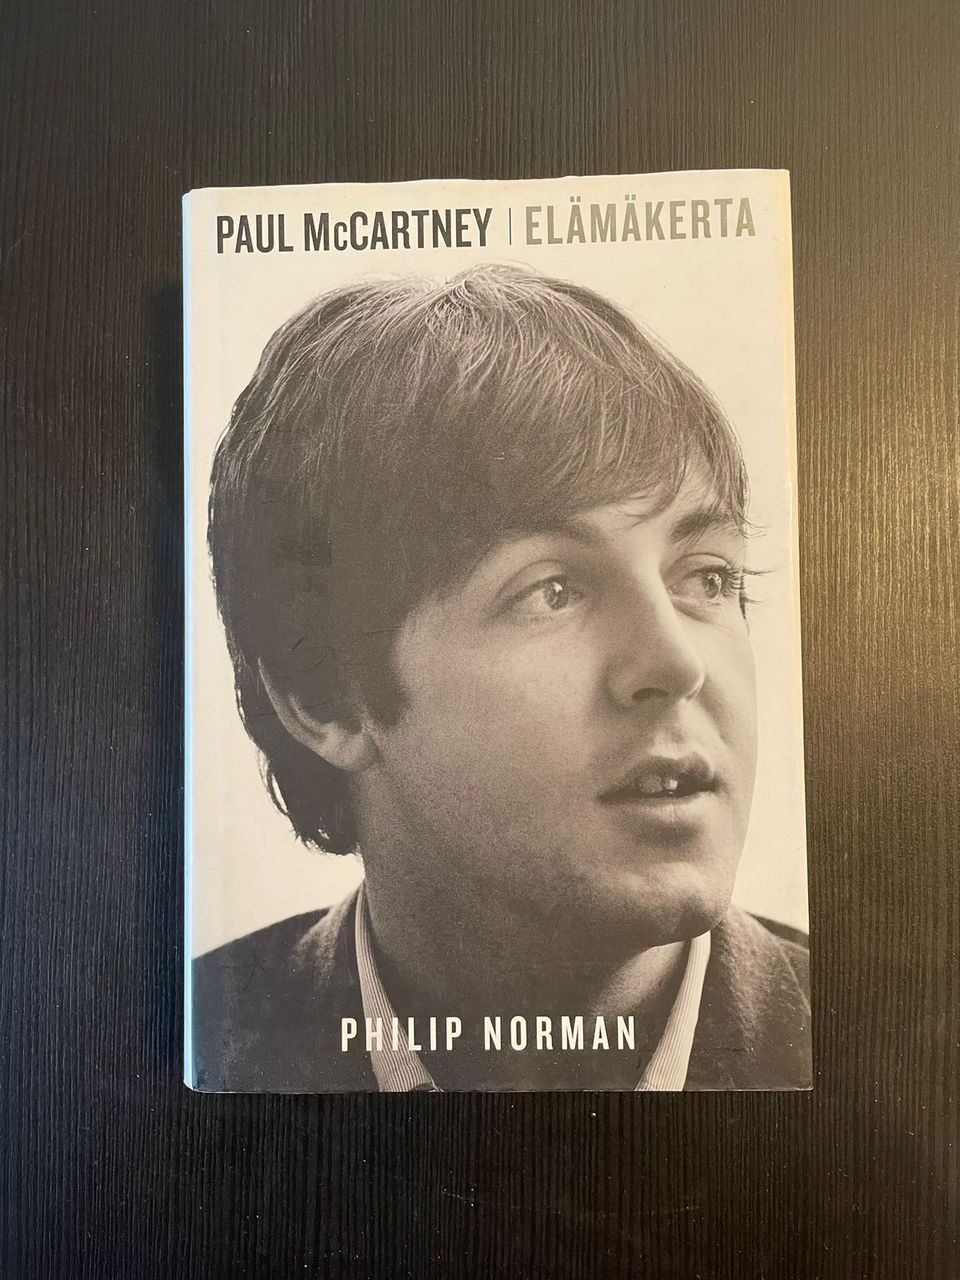 Paul McCartney elämänkerta